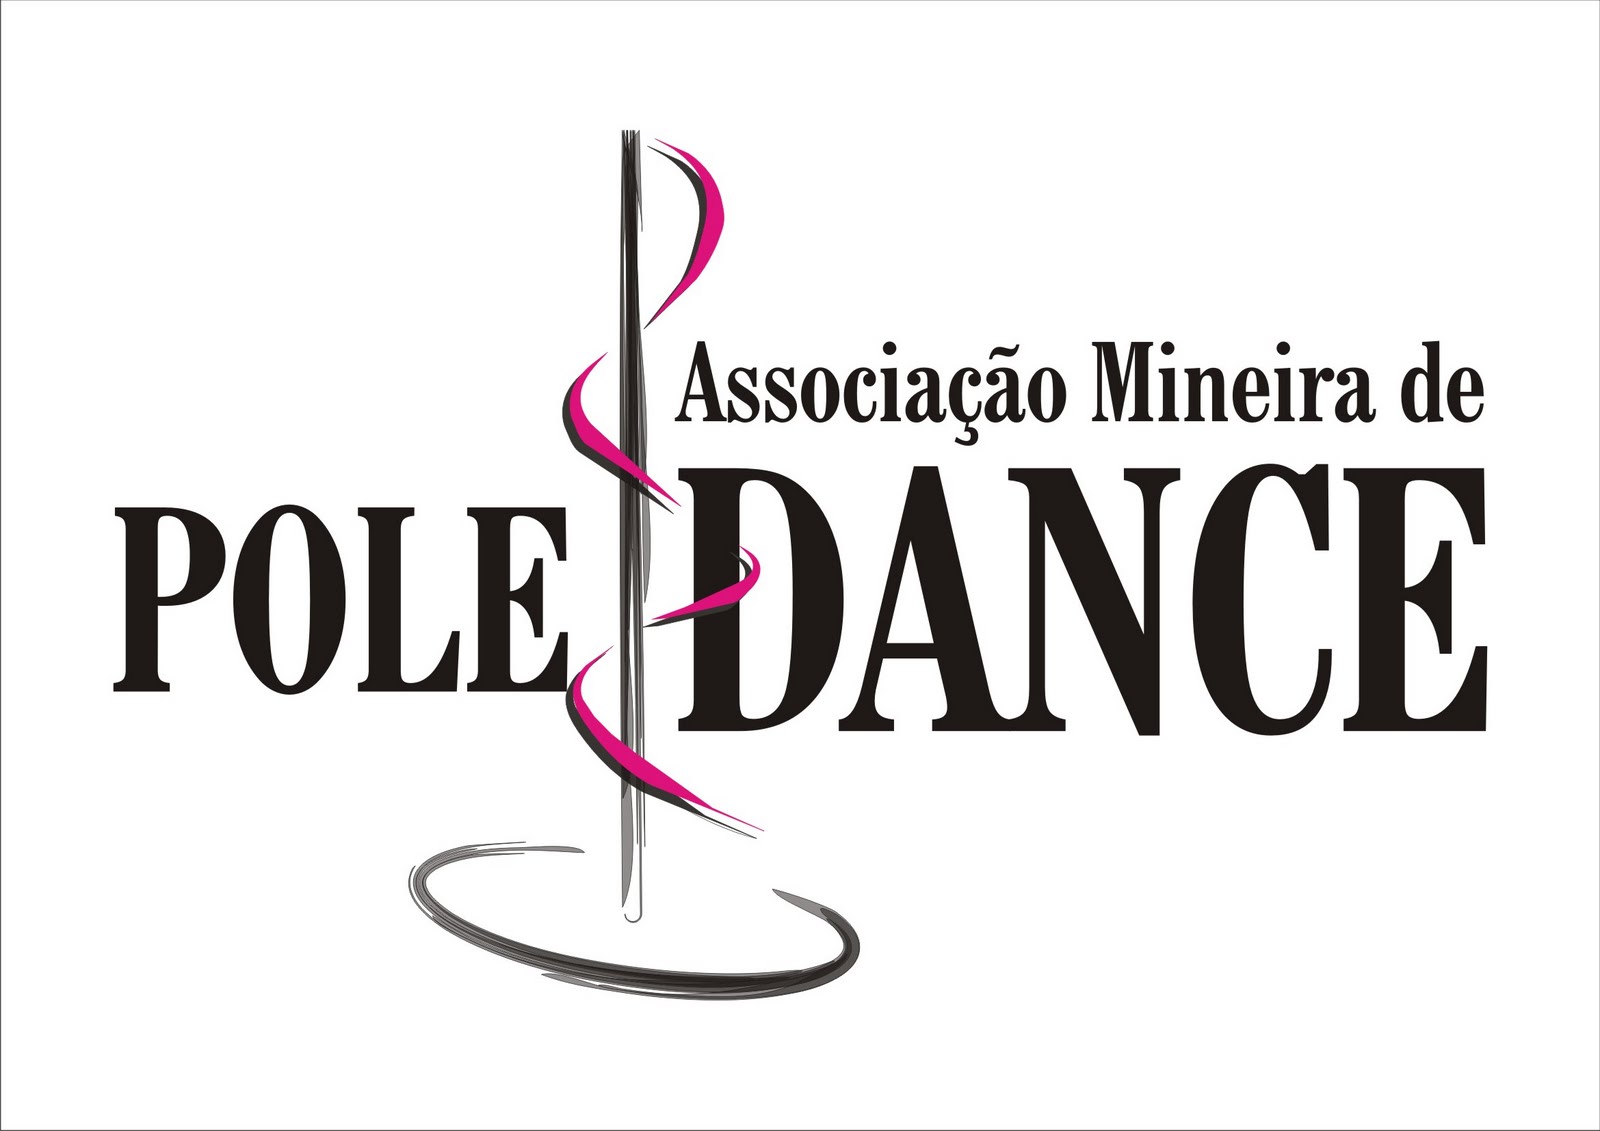 Associação Mineira de Pole Dance